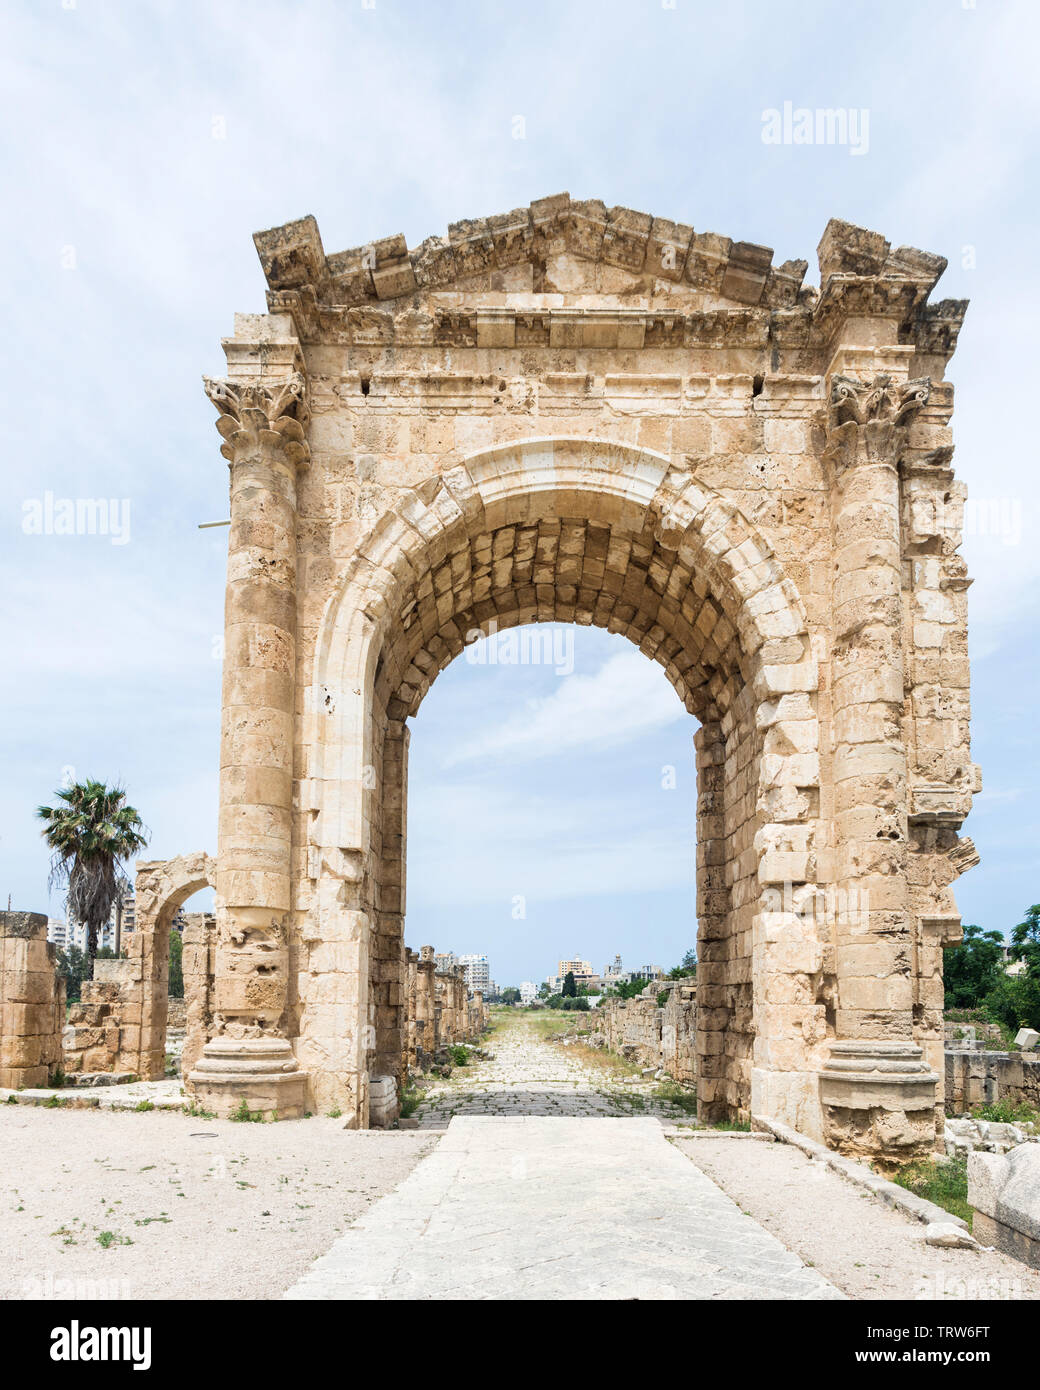 Arco di Trionfo di Adriano, al Bass sito archeologico, pneumatico, Libano Foto Stock